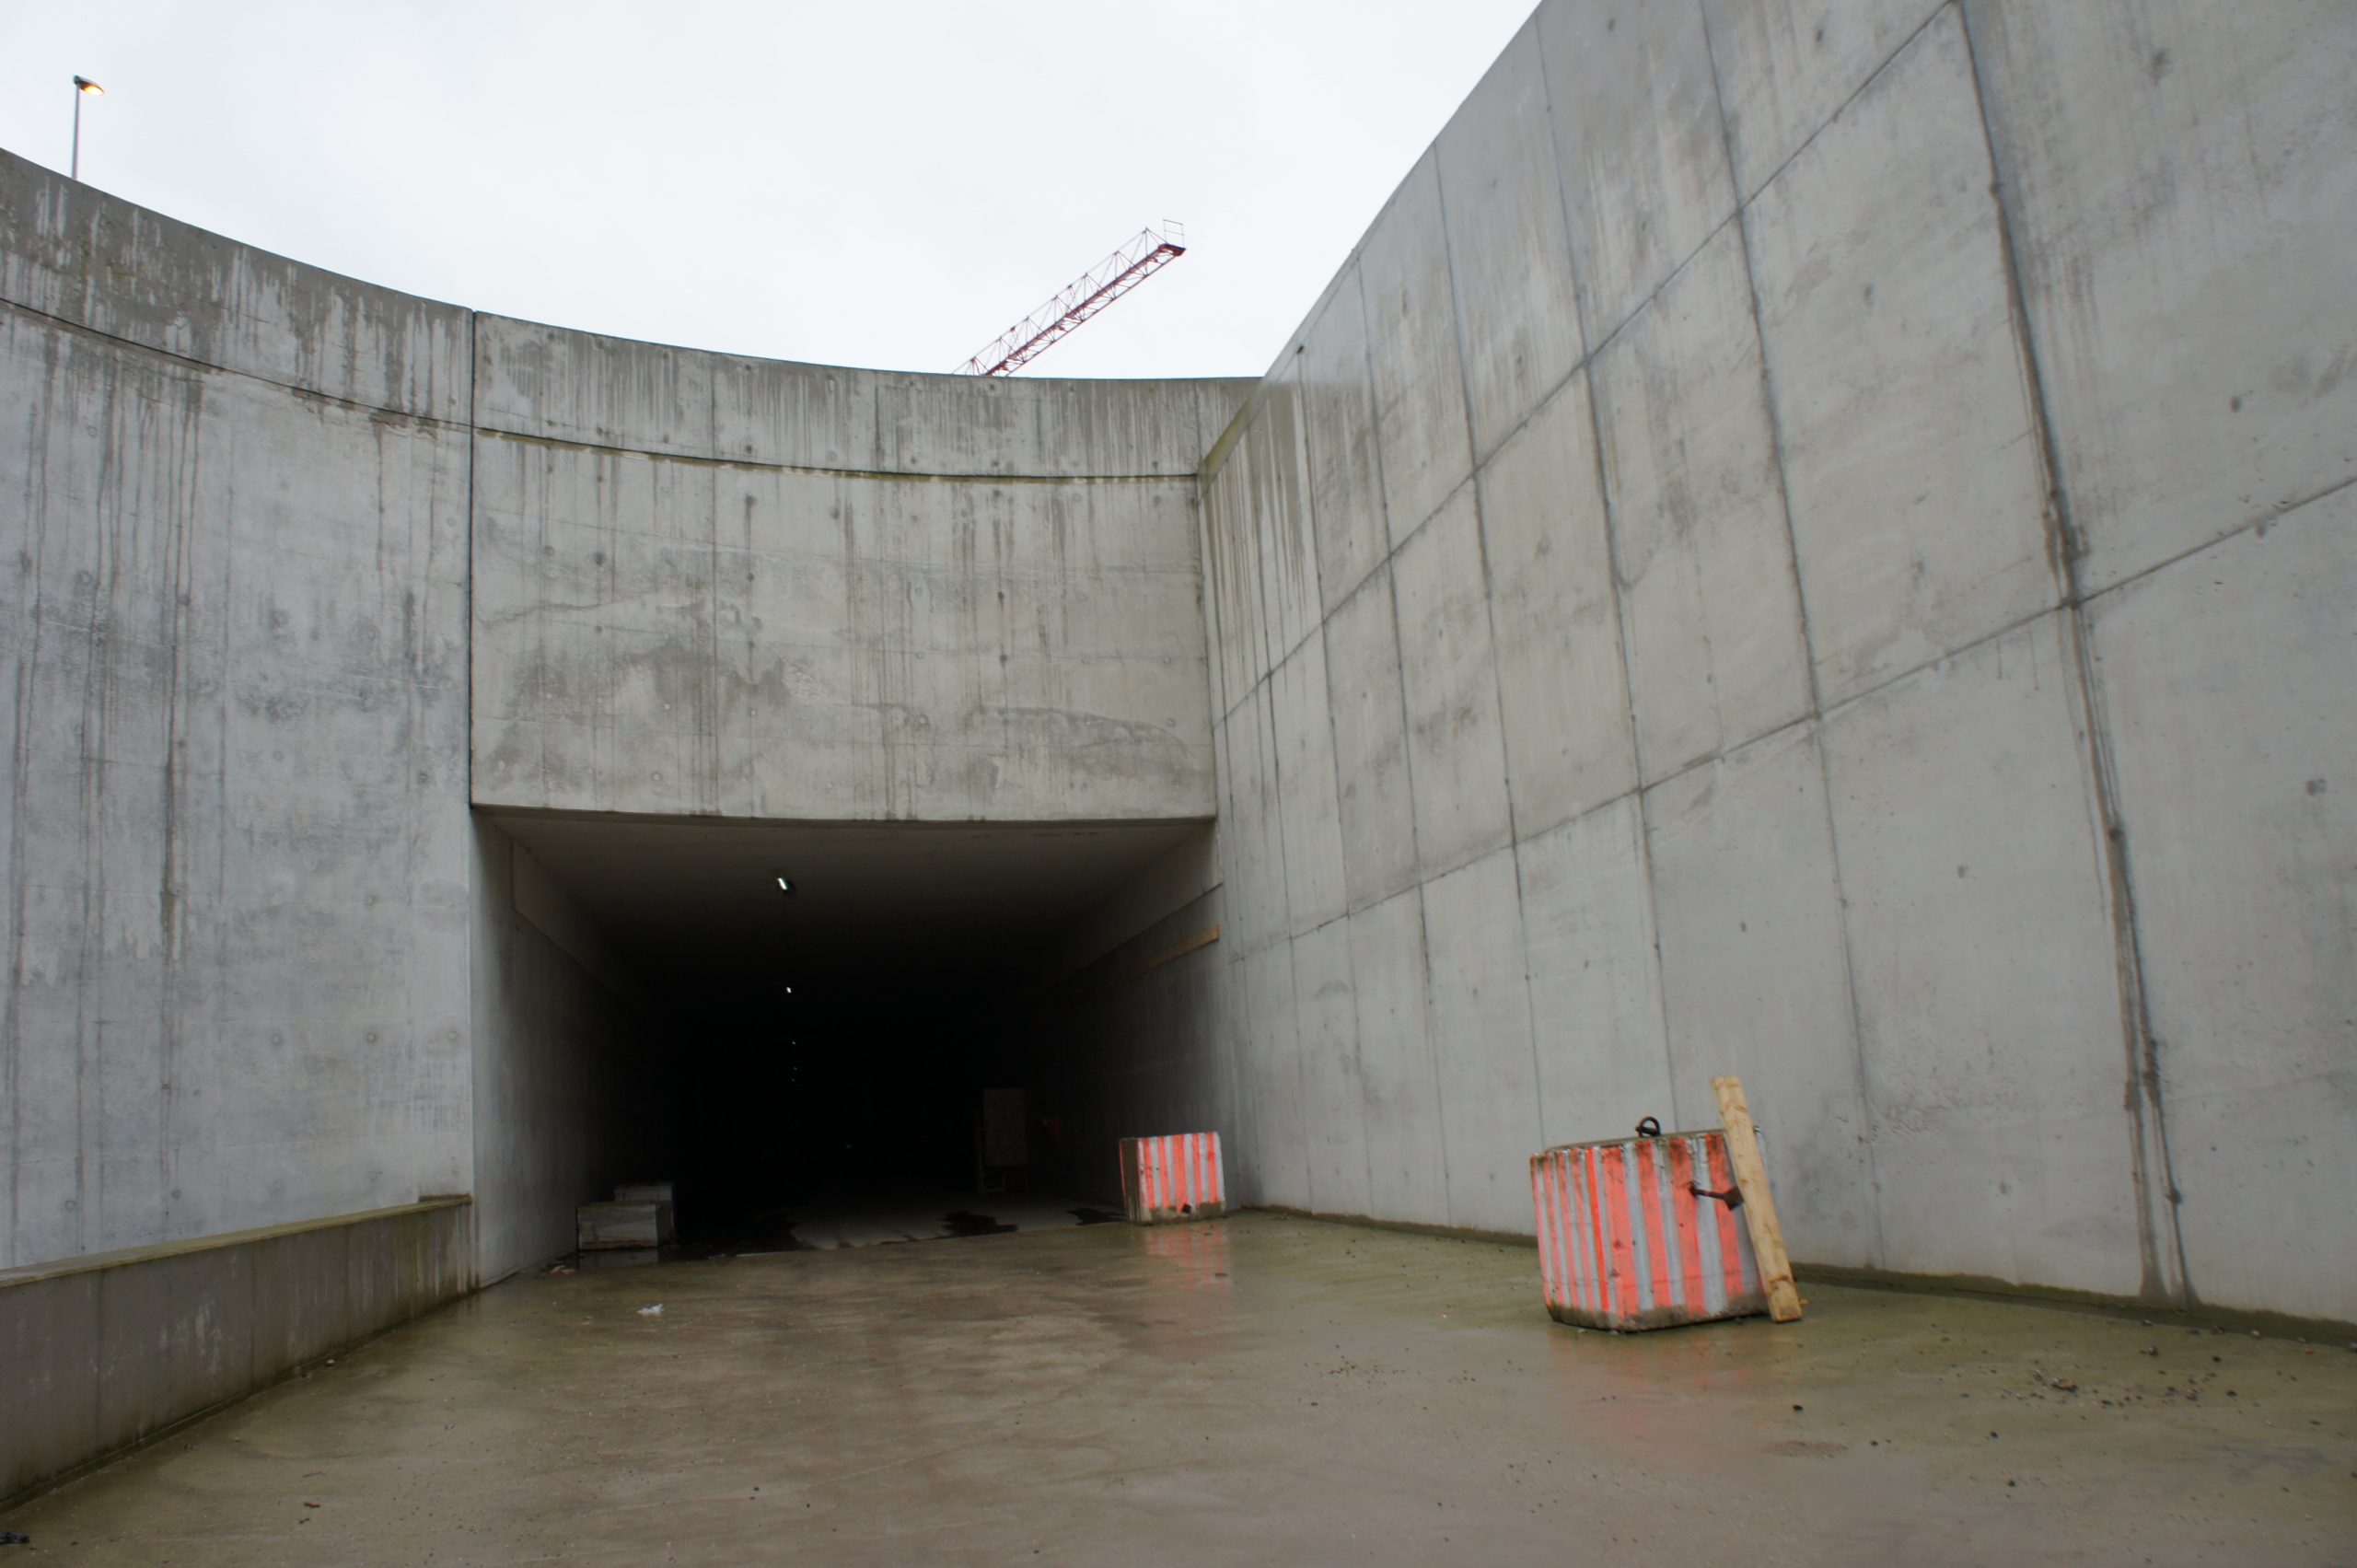 Schrumpf tunnel Avenue 2